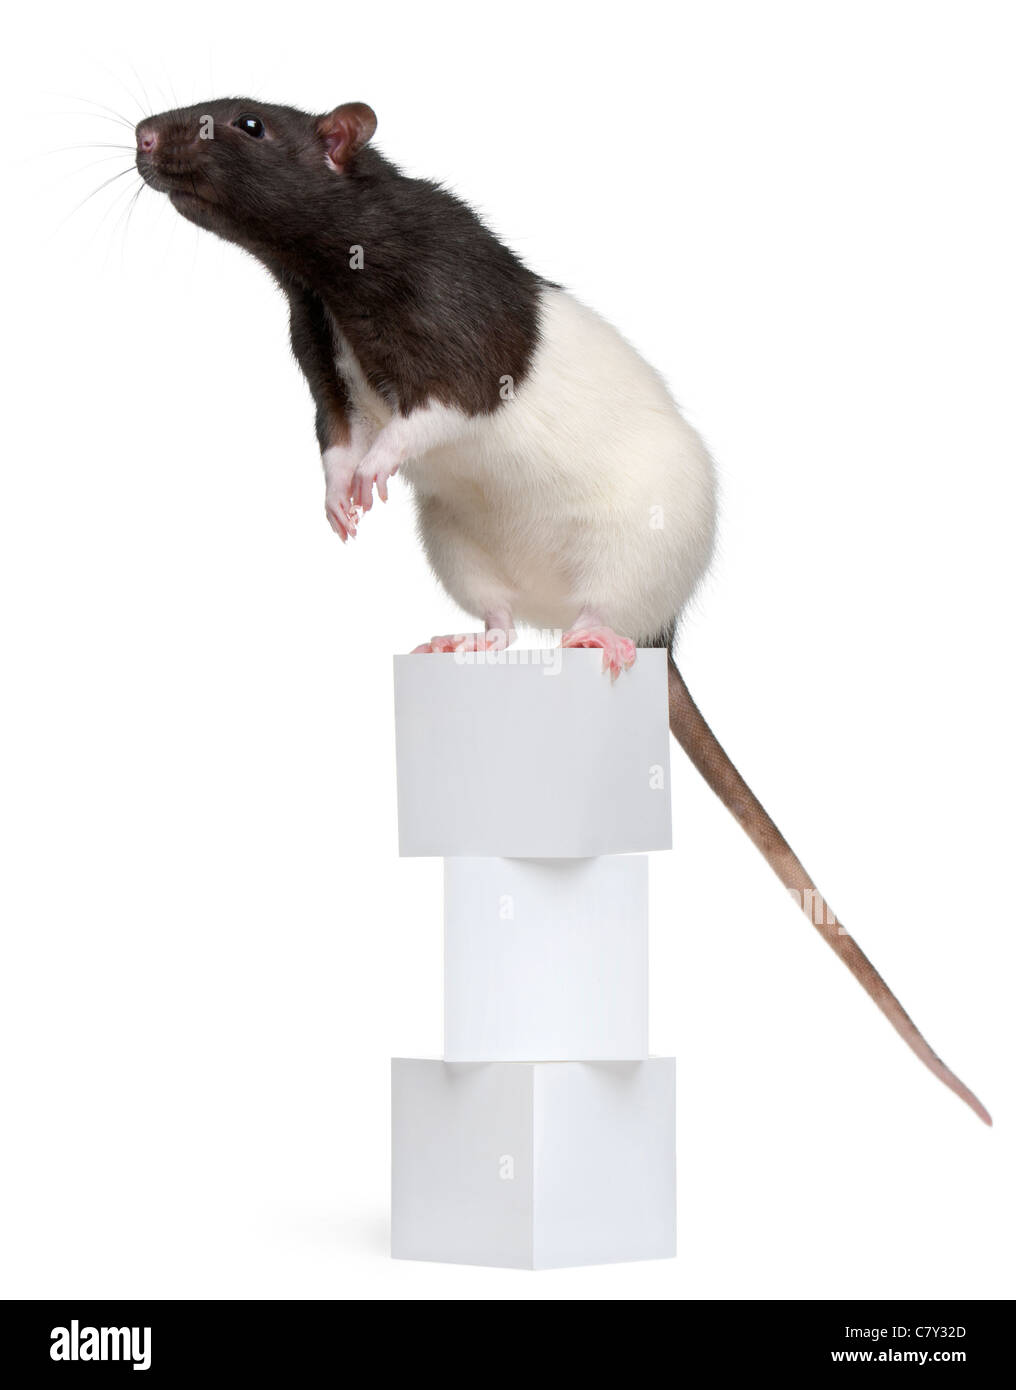 Rat de fantaisie, 1 ans, debout sur des blocs in front of white background Banque D'Images